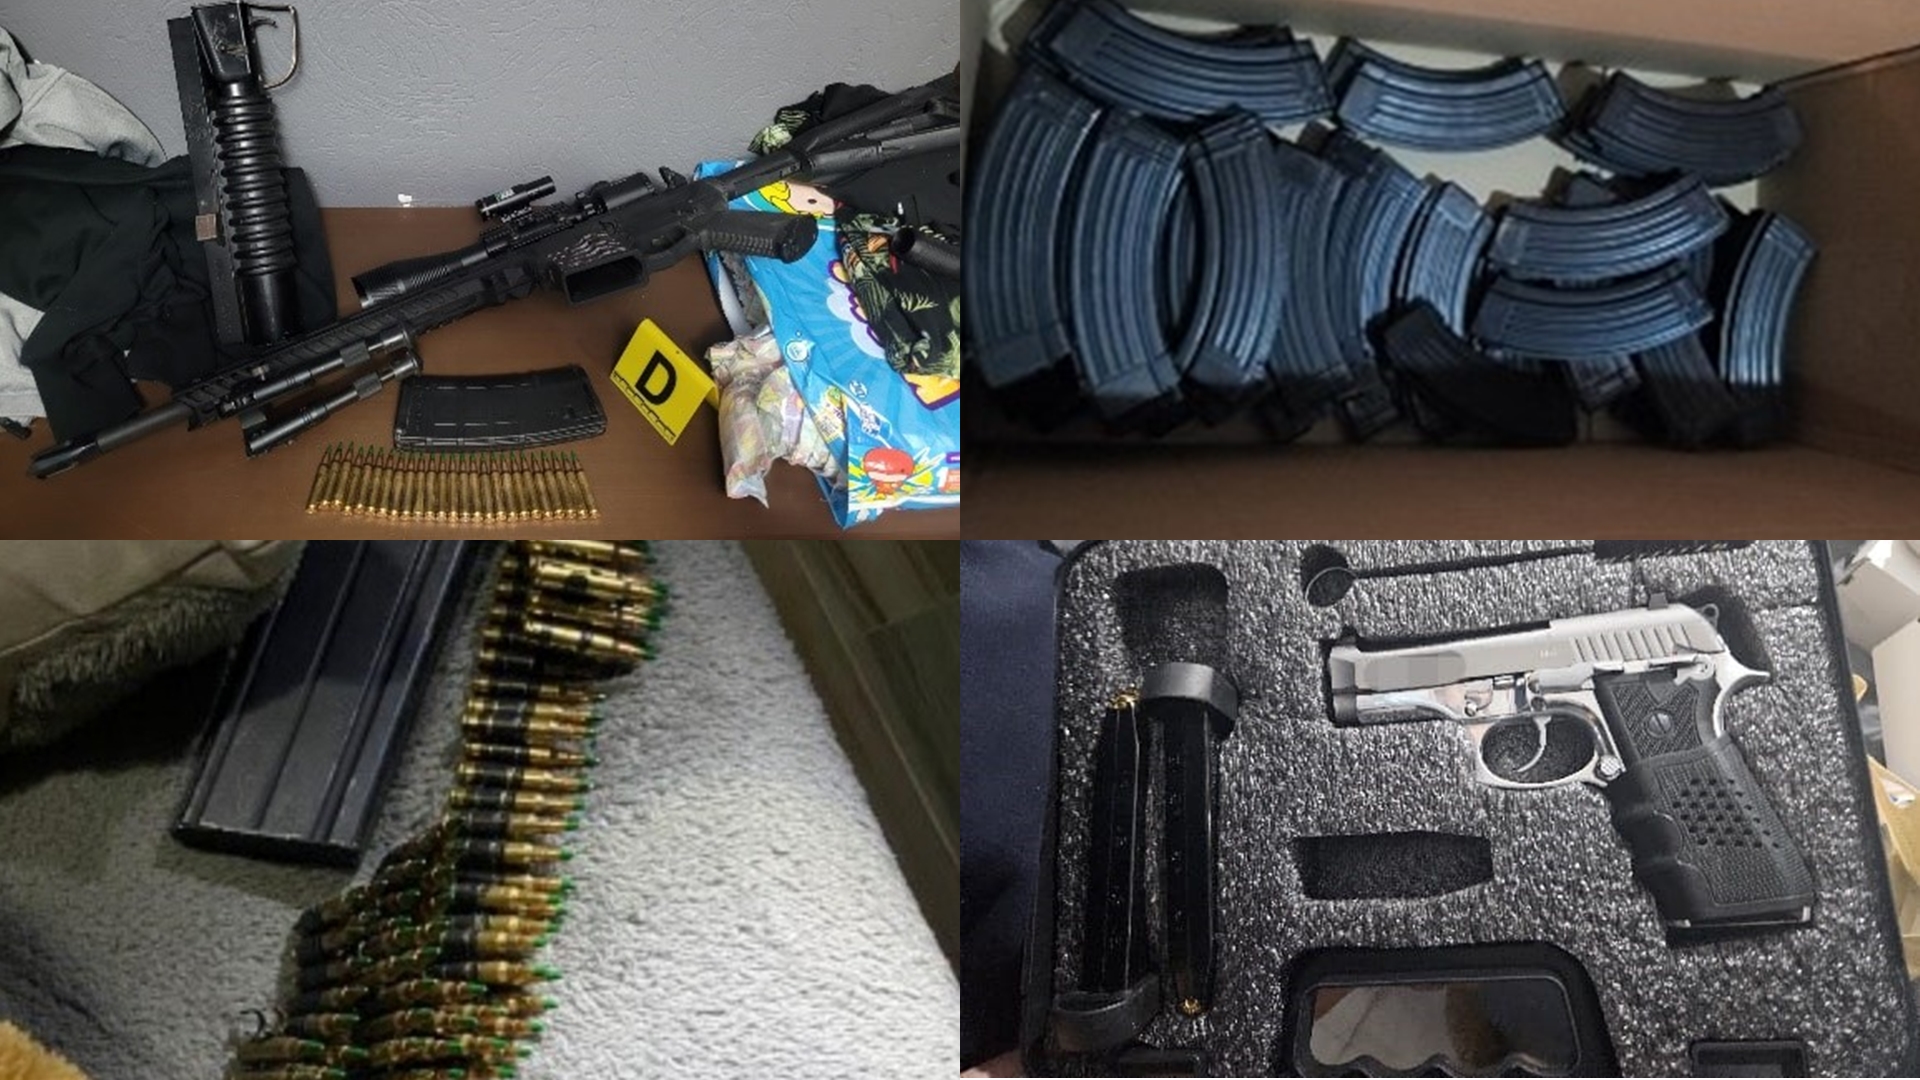 A estas personas se les encontró seis armas de fuego, 25 cargadores, cartuchos de diferentes calibres, bolsas con marihuana, 600 bolsitas con sustancia sólida, entre otras cosas
(Foto: FGR)